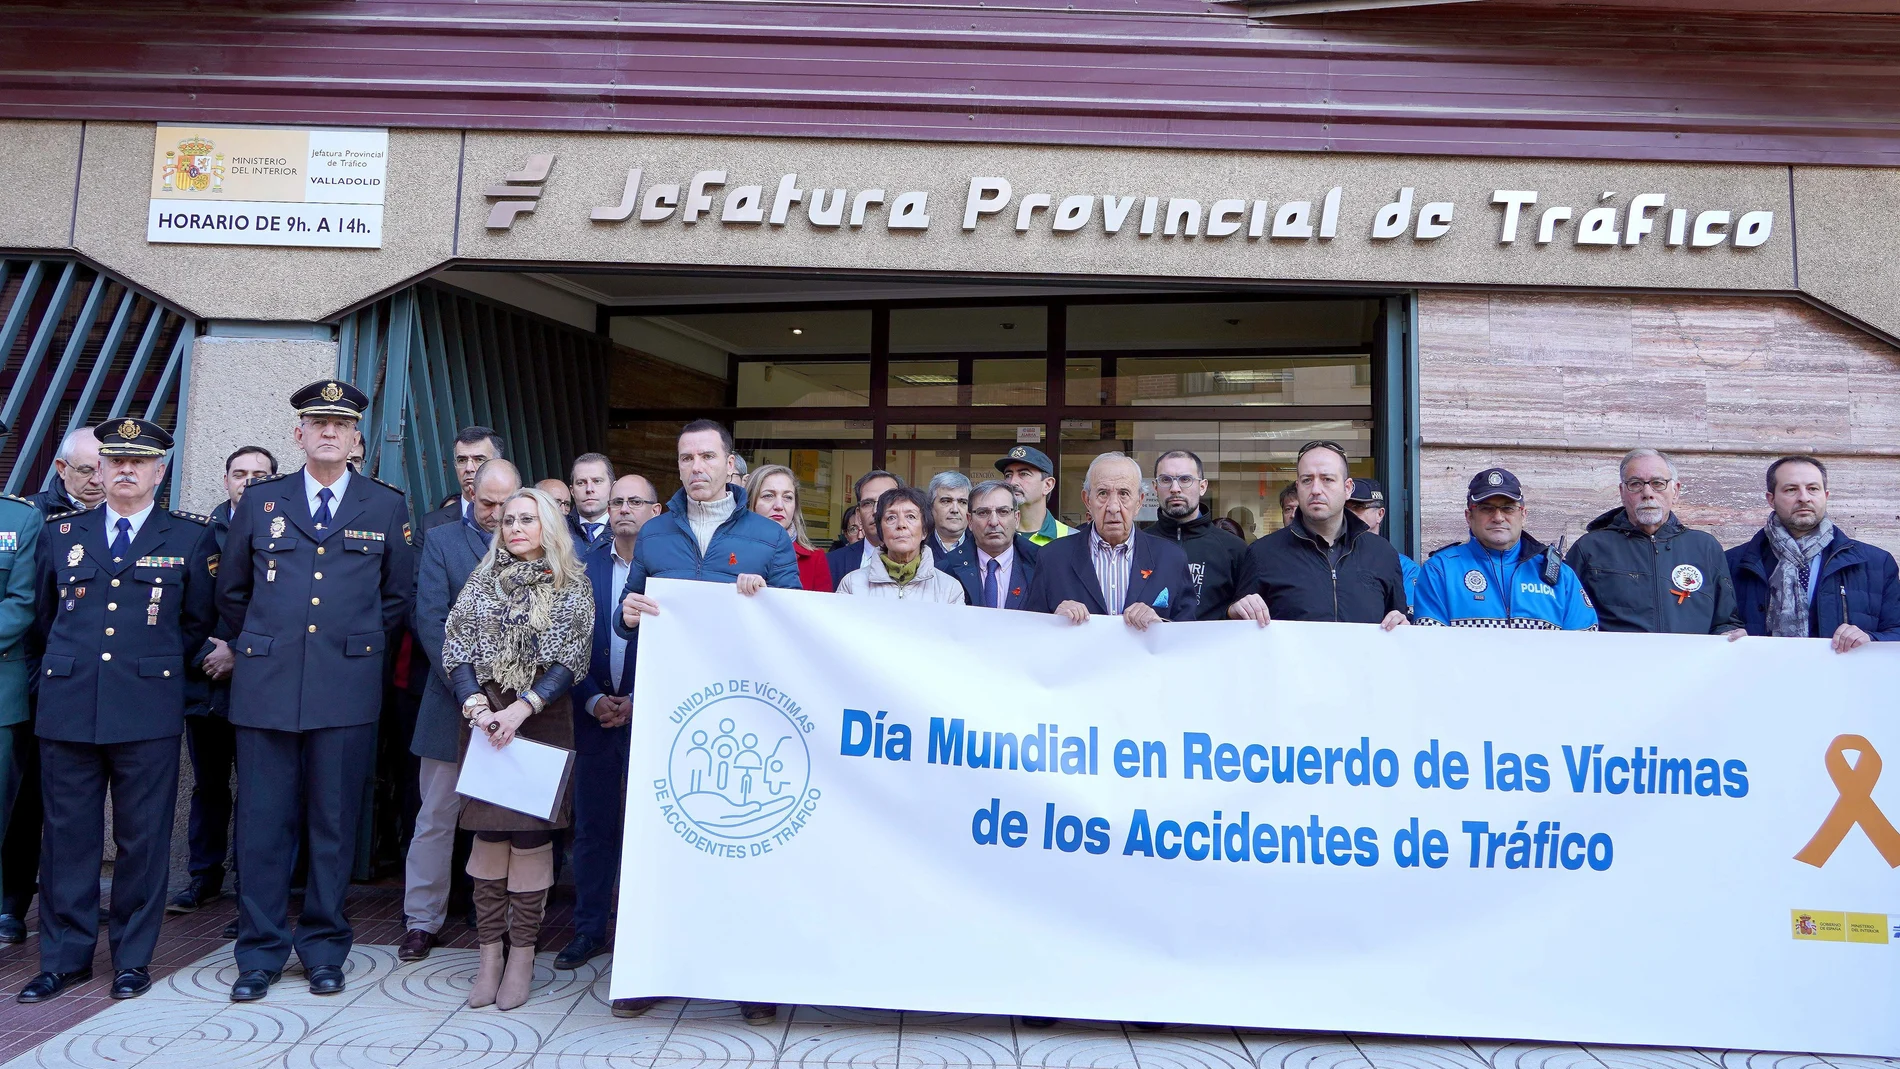 Minuto de silencio para recordar a las víctimas de los accidentes de tráfico en el Centro de Gestión de Tráfico de Valladolid